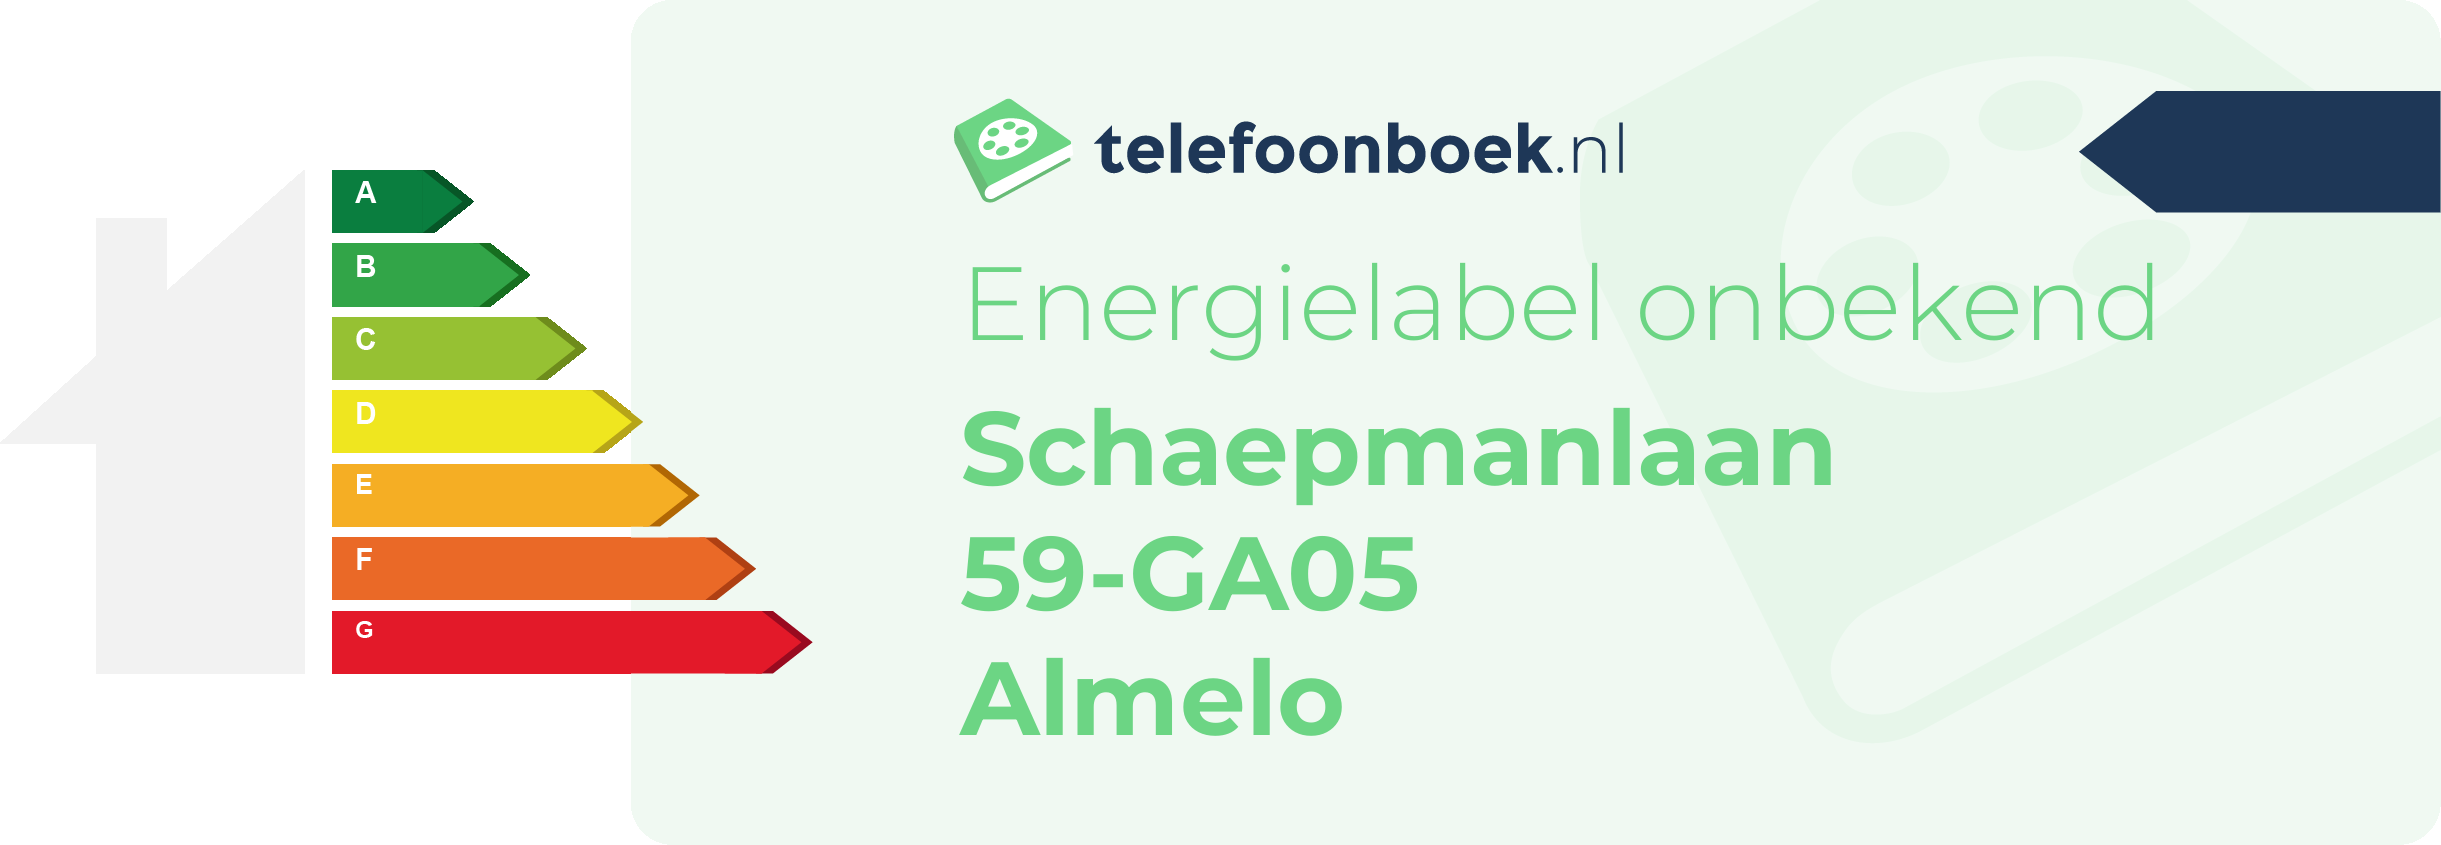 Energielabel Schaepmanlaan 59-GA05 Almelo